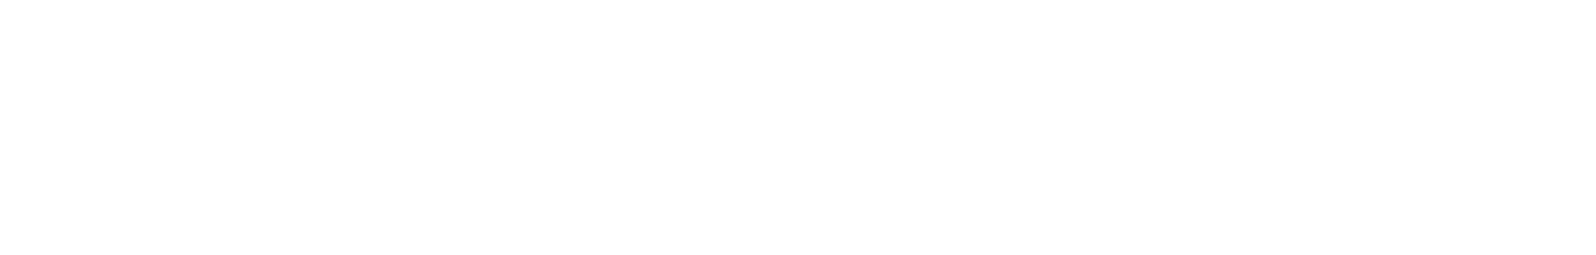 Myriad Genetics Logo groß für dunkle Hintergründe (transparentes PNG)